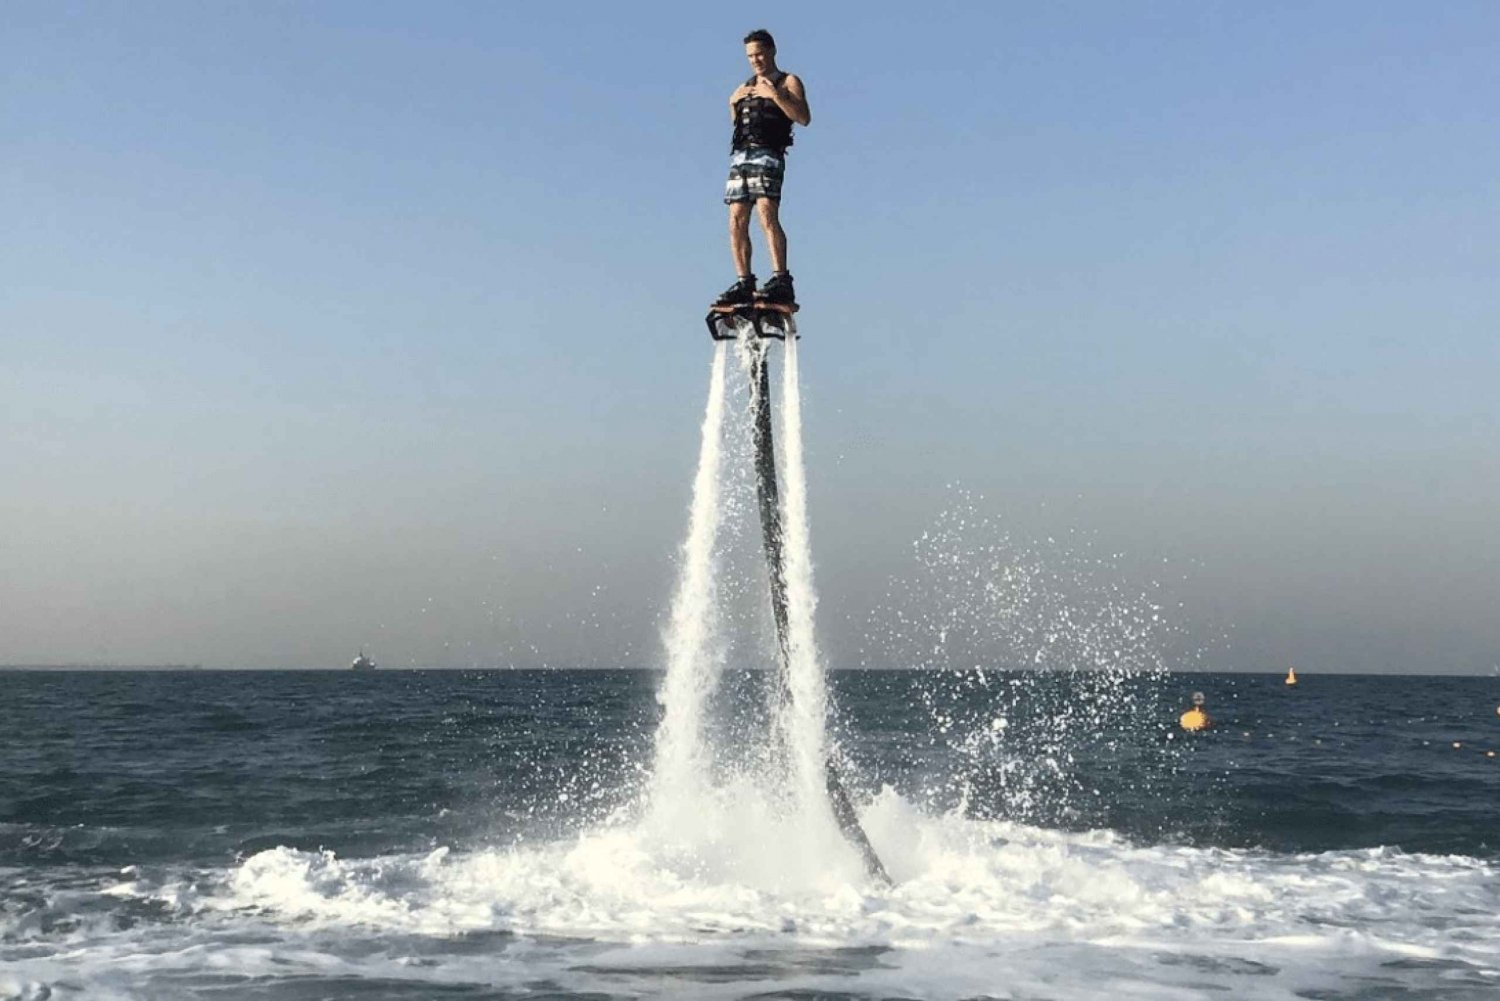 Dubaï : Jet ski et Flyboard à Dubaï